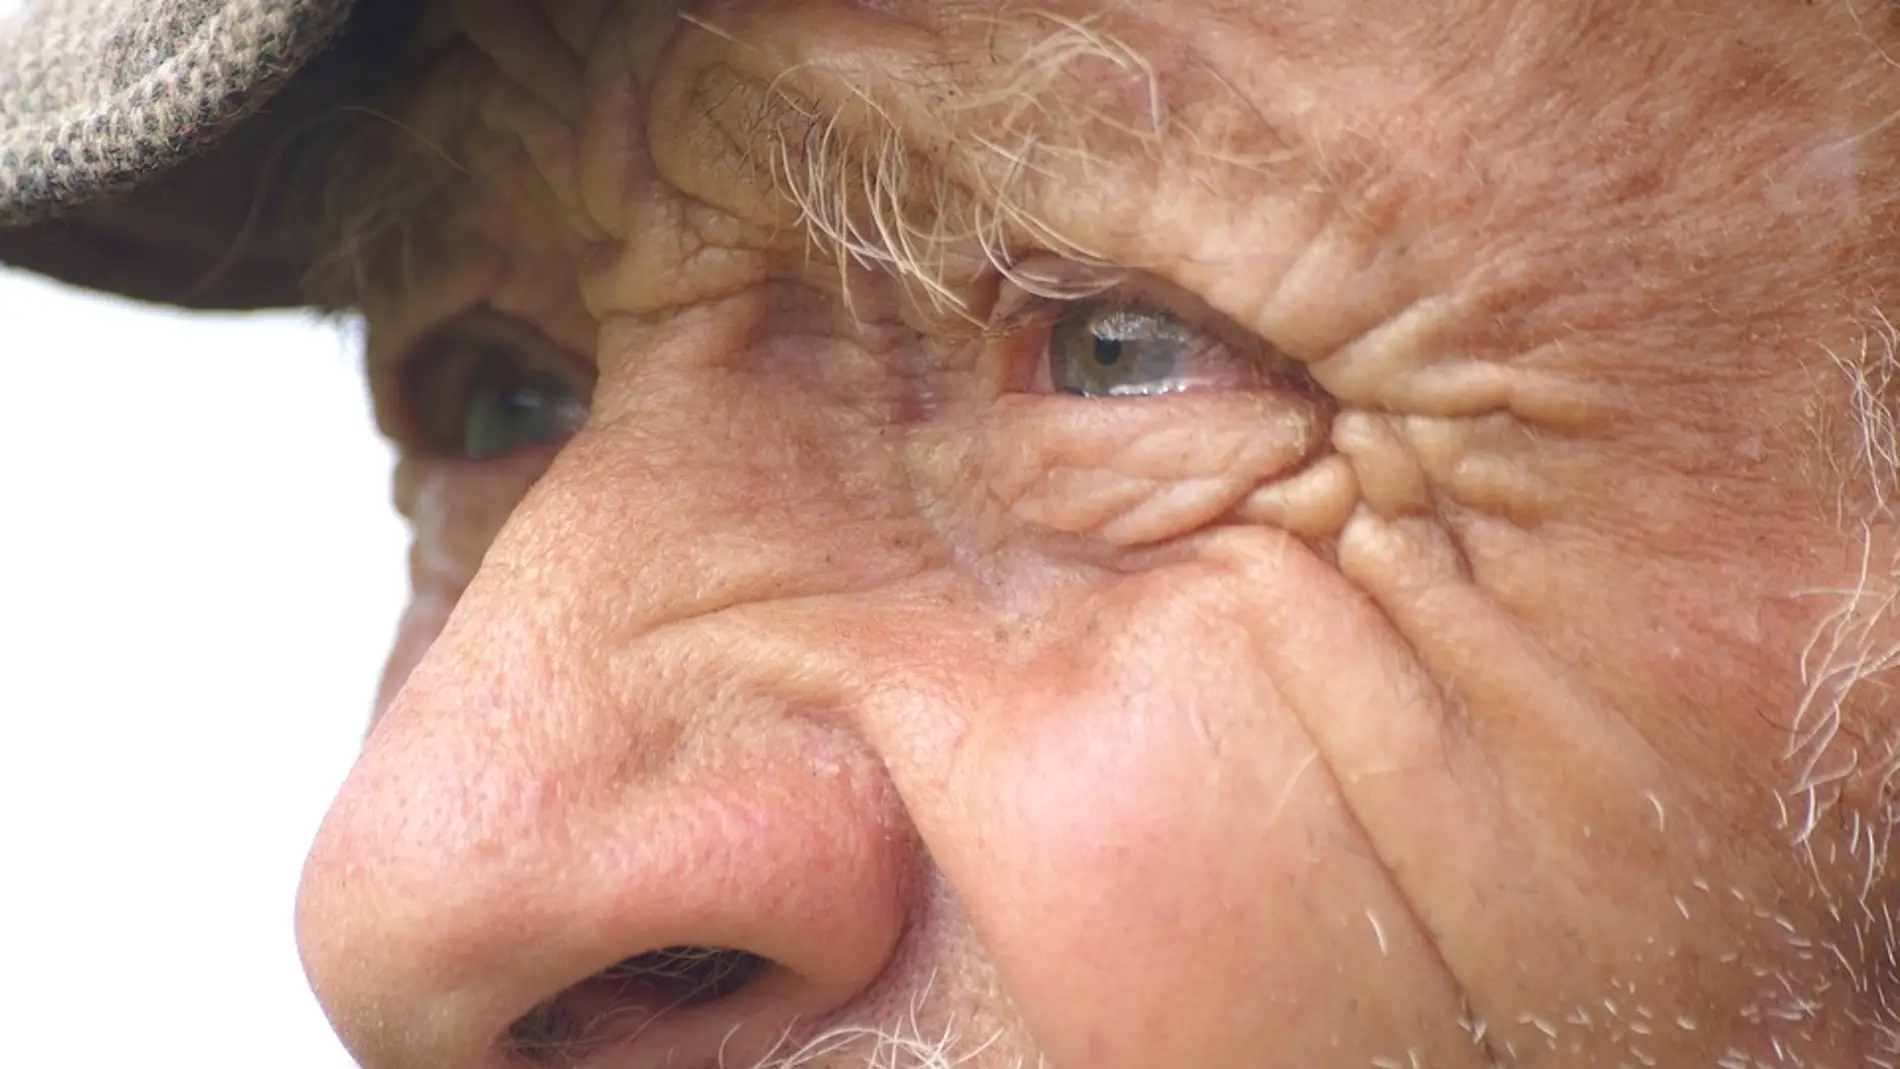 El Alzheimer se podría detectar a través de los ojos